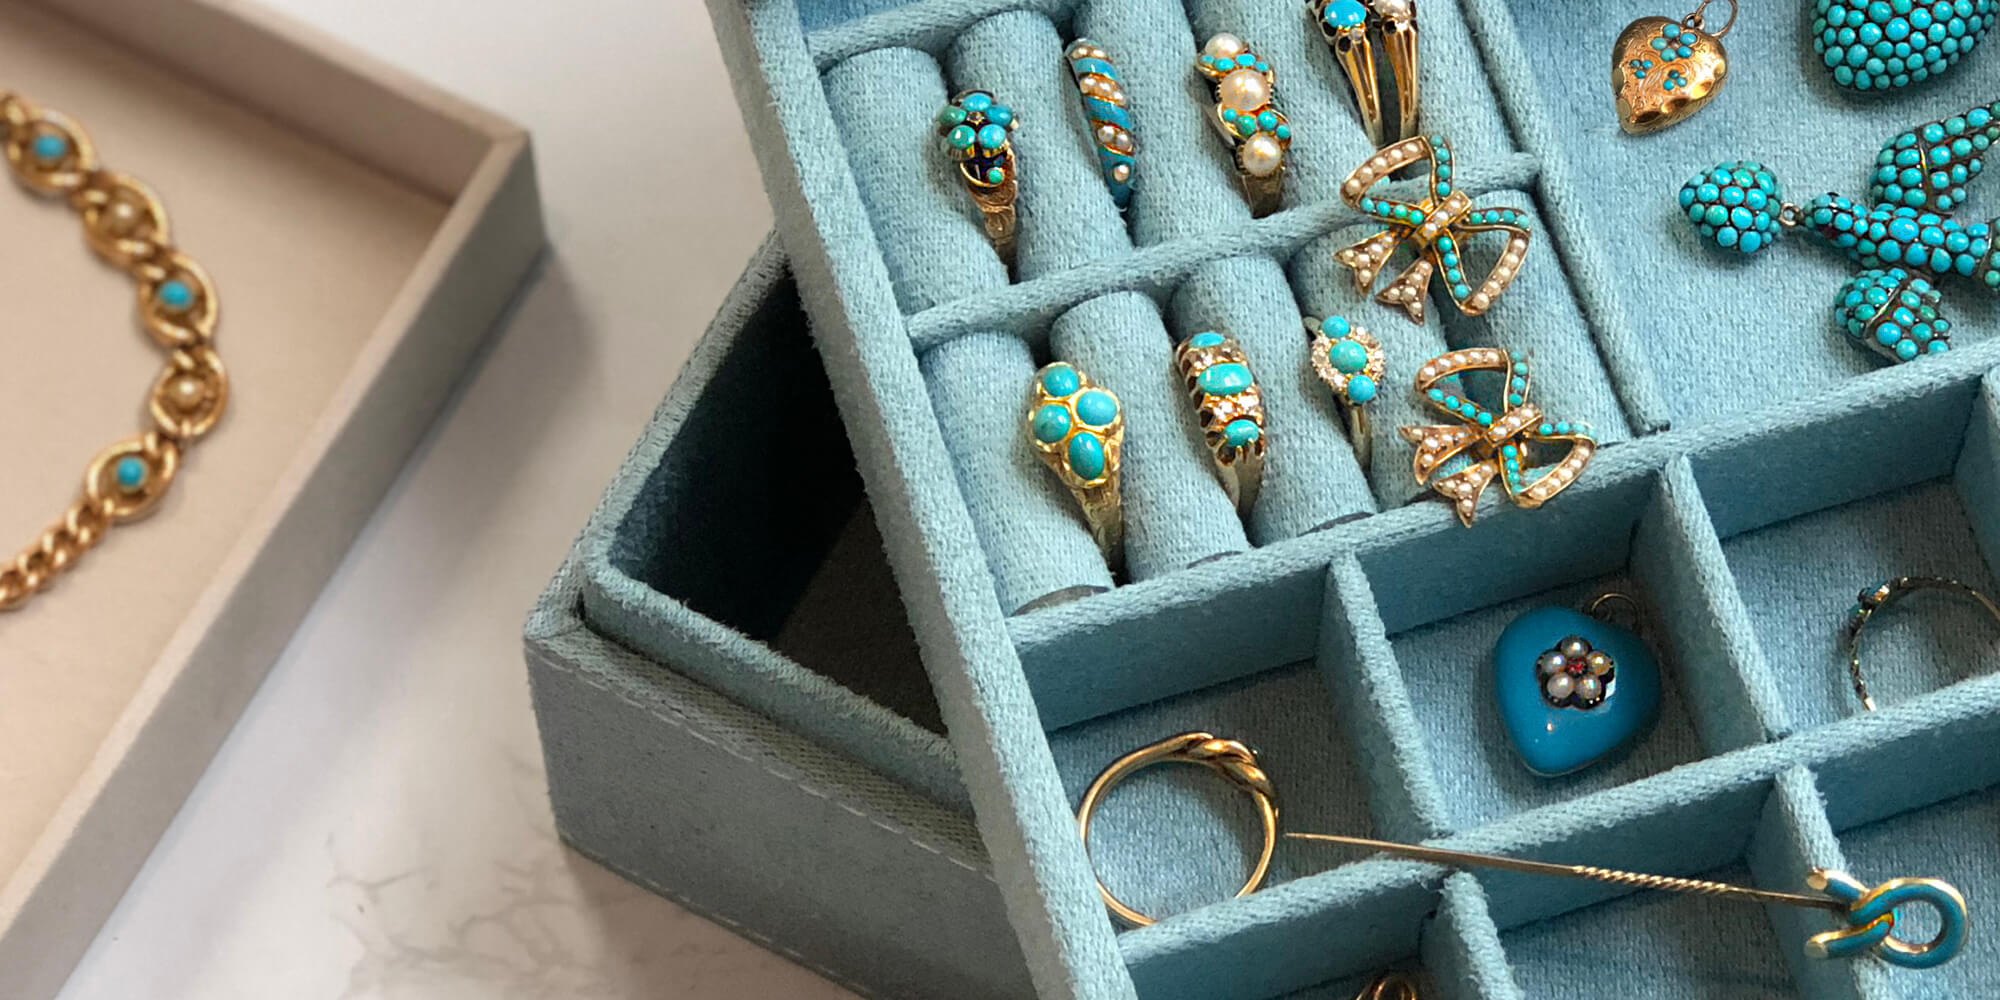 Antique turquoise jewellery